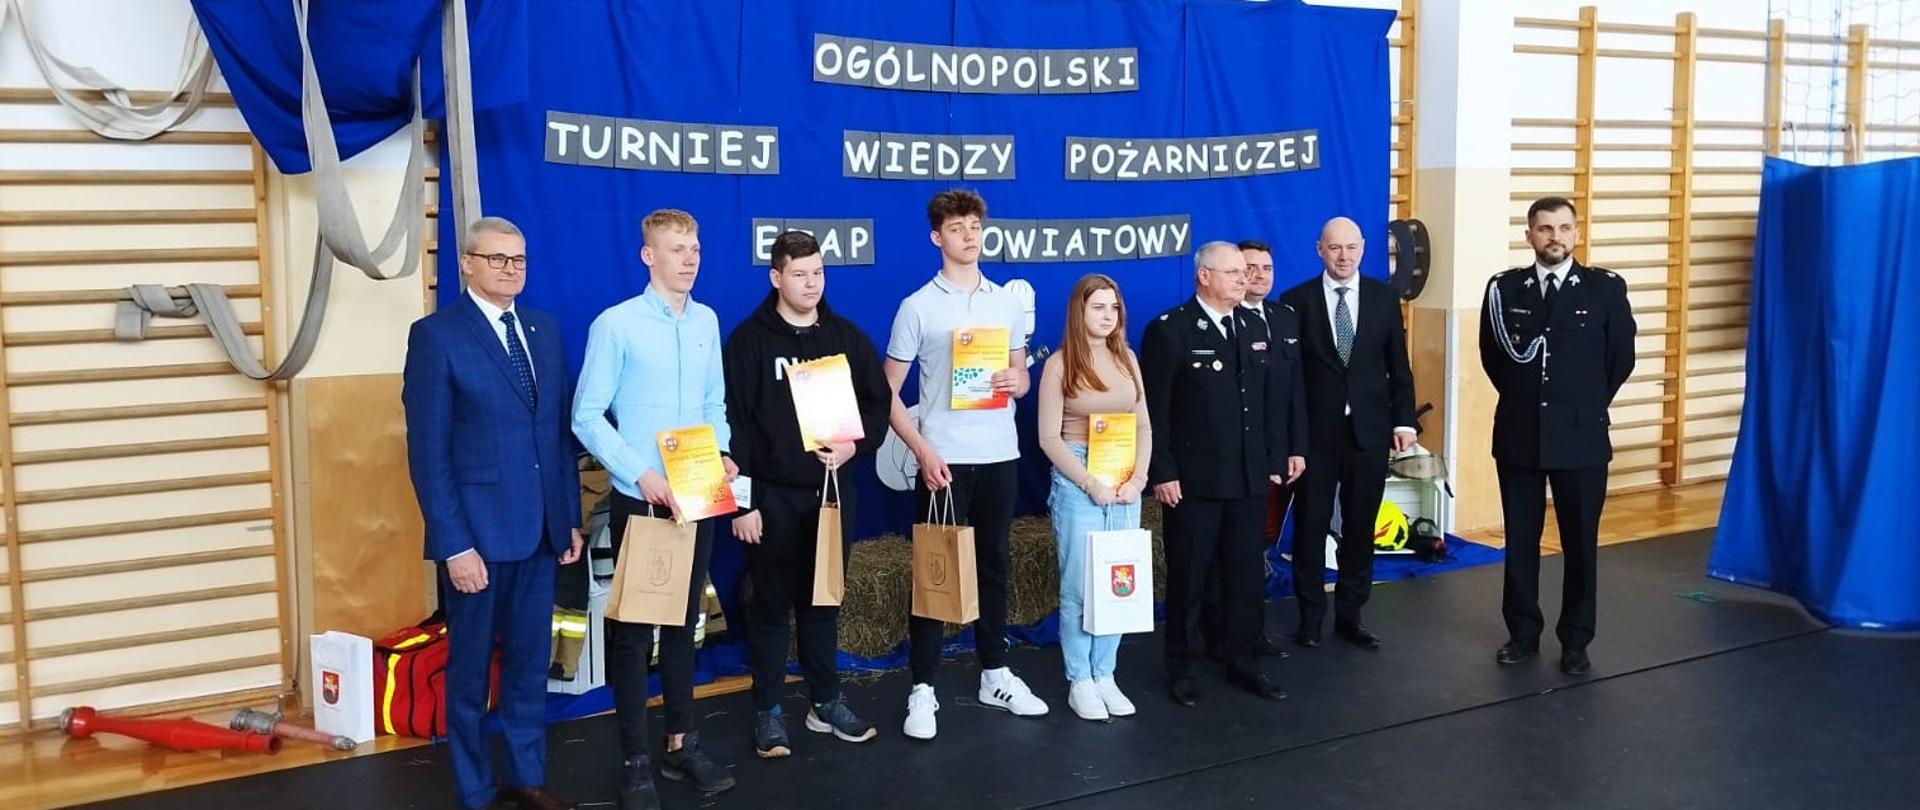 Eliminacje powiatowe Ogólnopolskiego Turnieju Wiedzy Pożarniczej